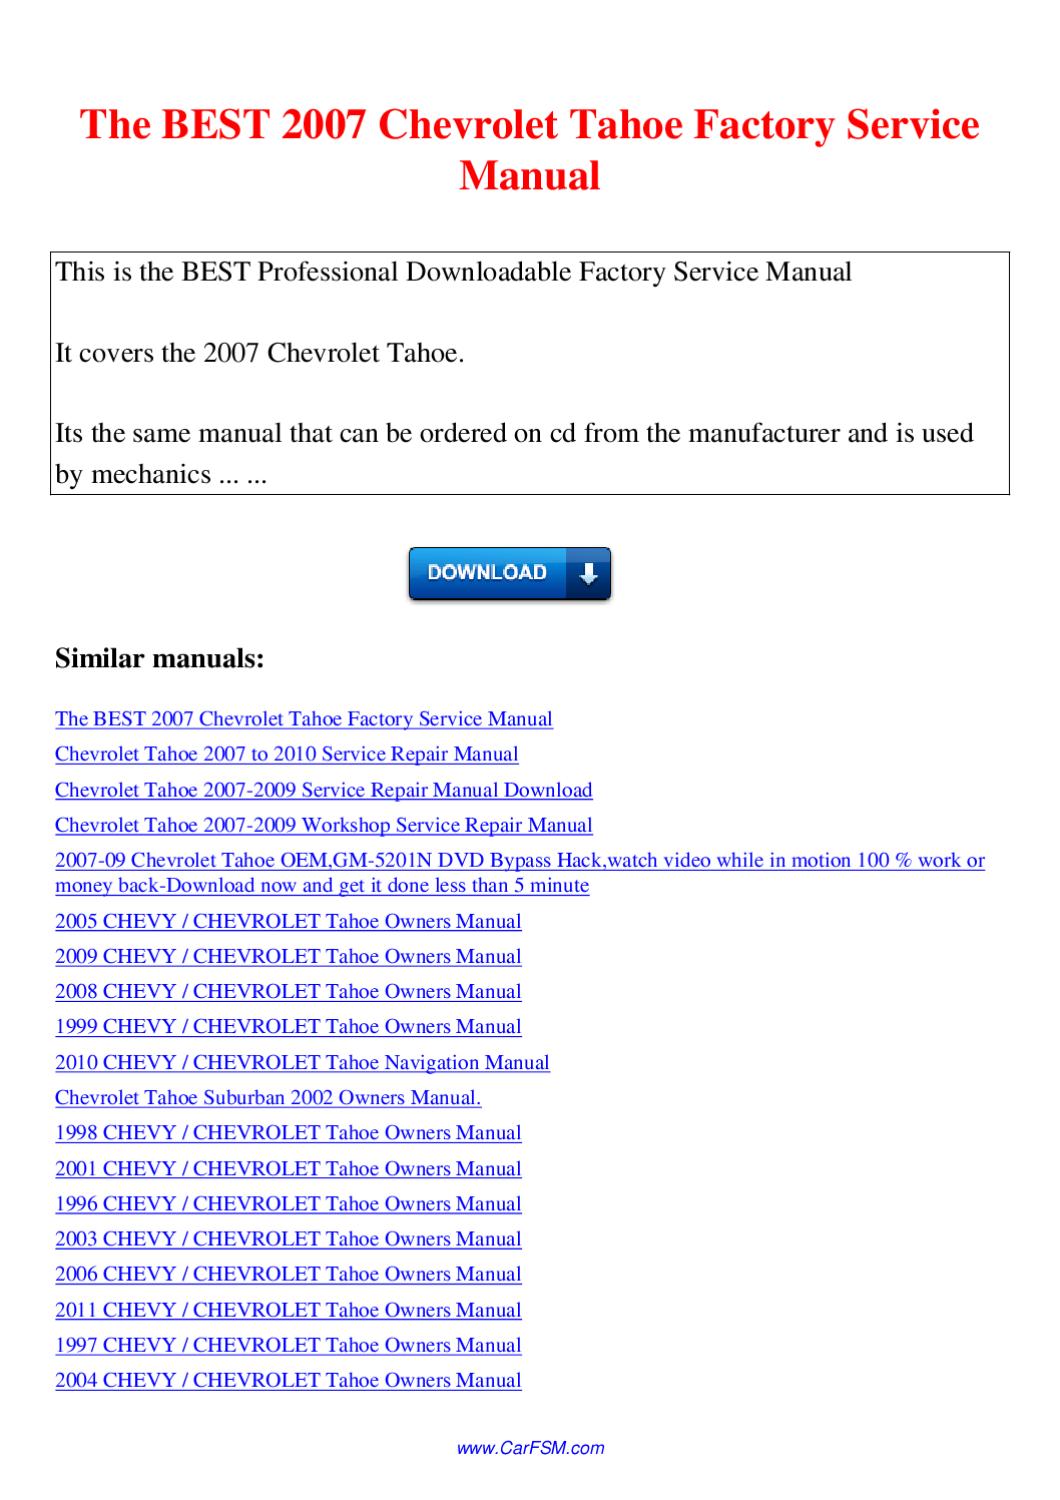 1996 chevrolet tahoe repair manual download